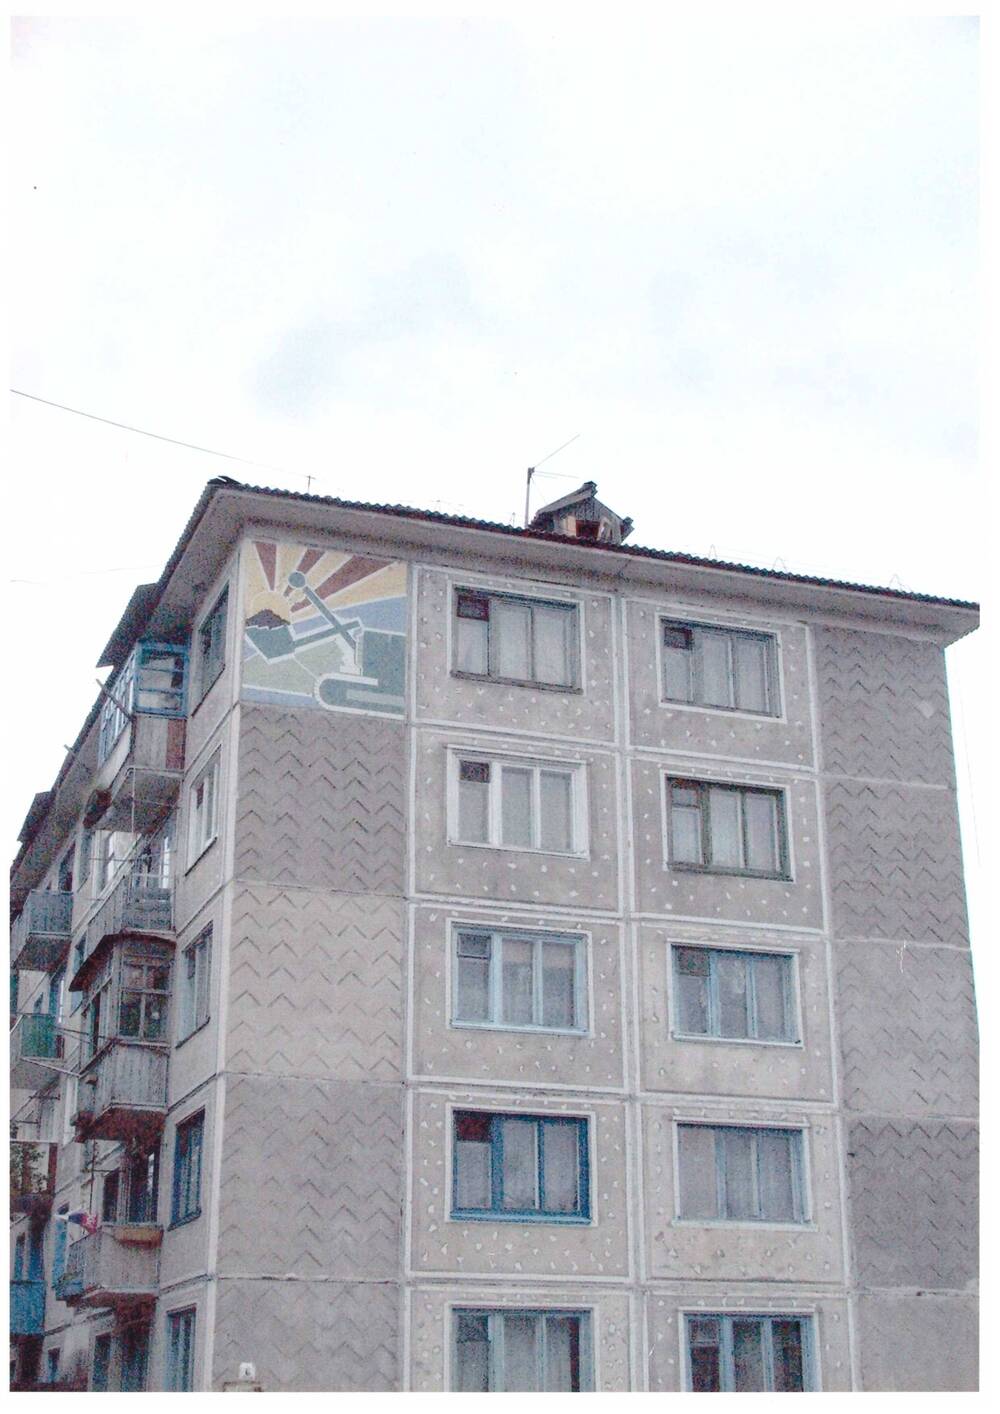 Фотография видовая г. Райчихинска, улица Гагарина 6